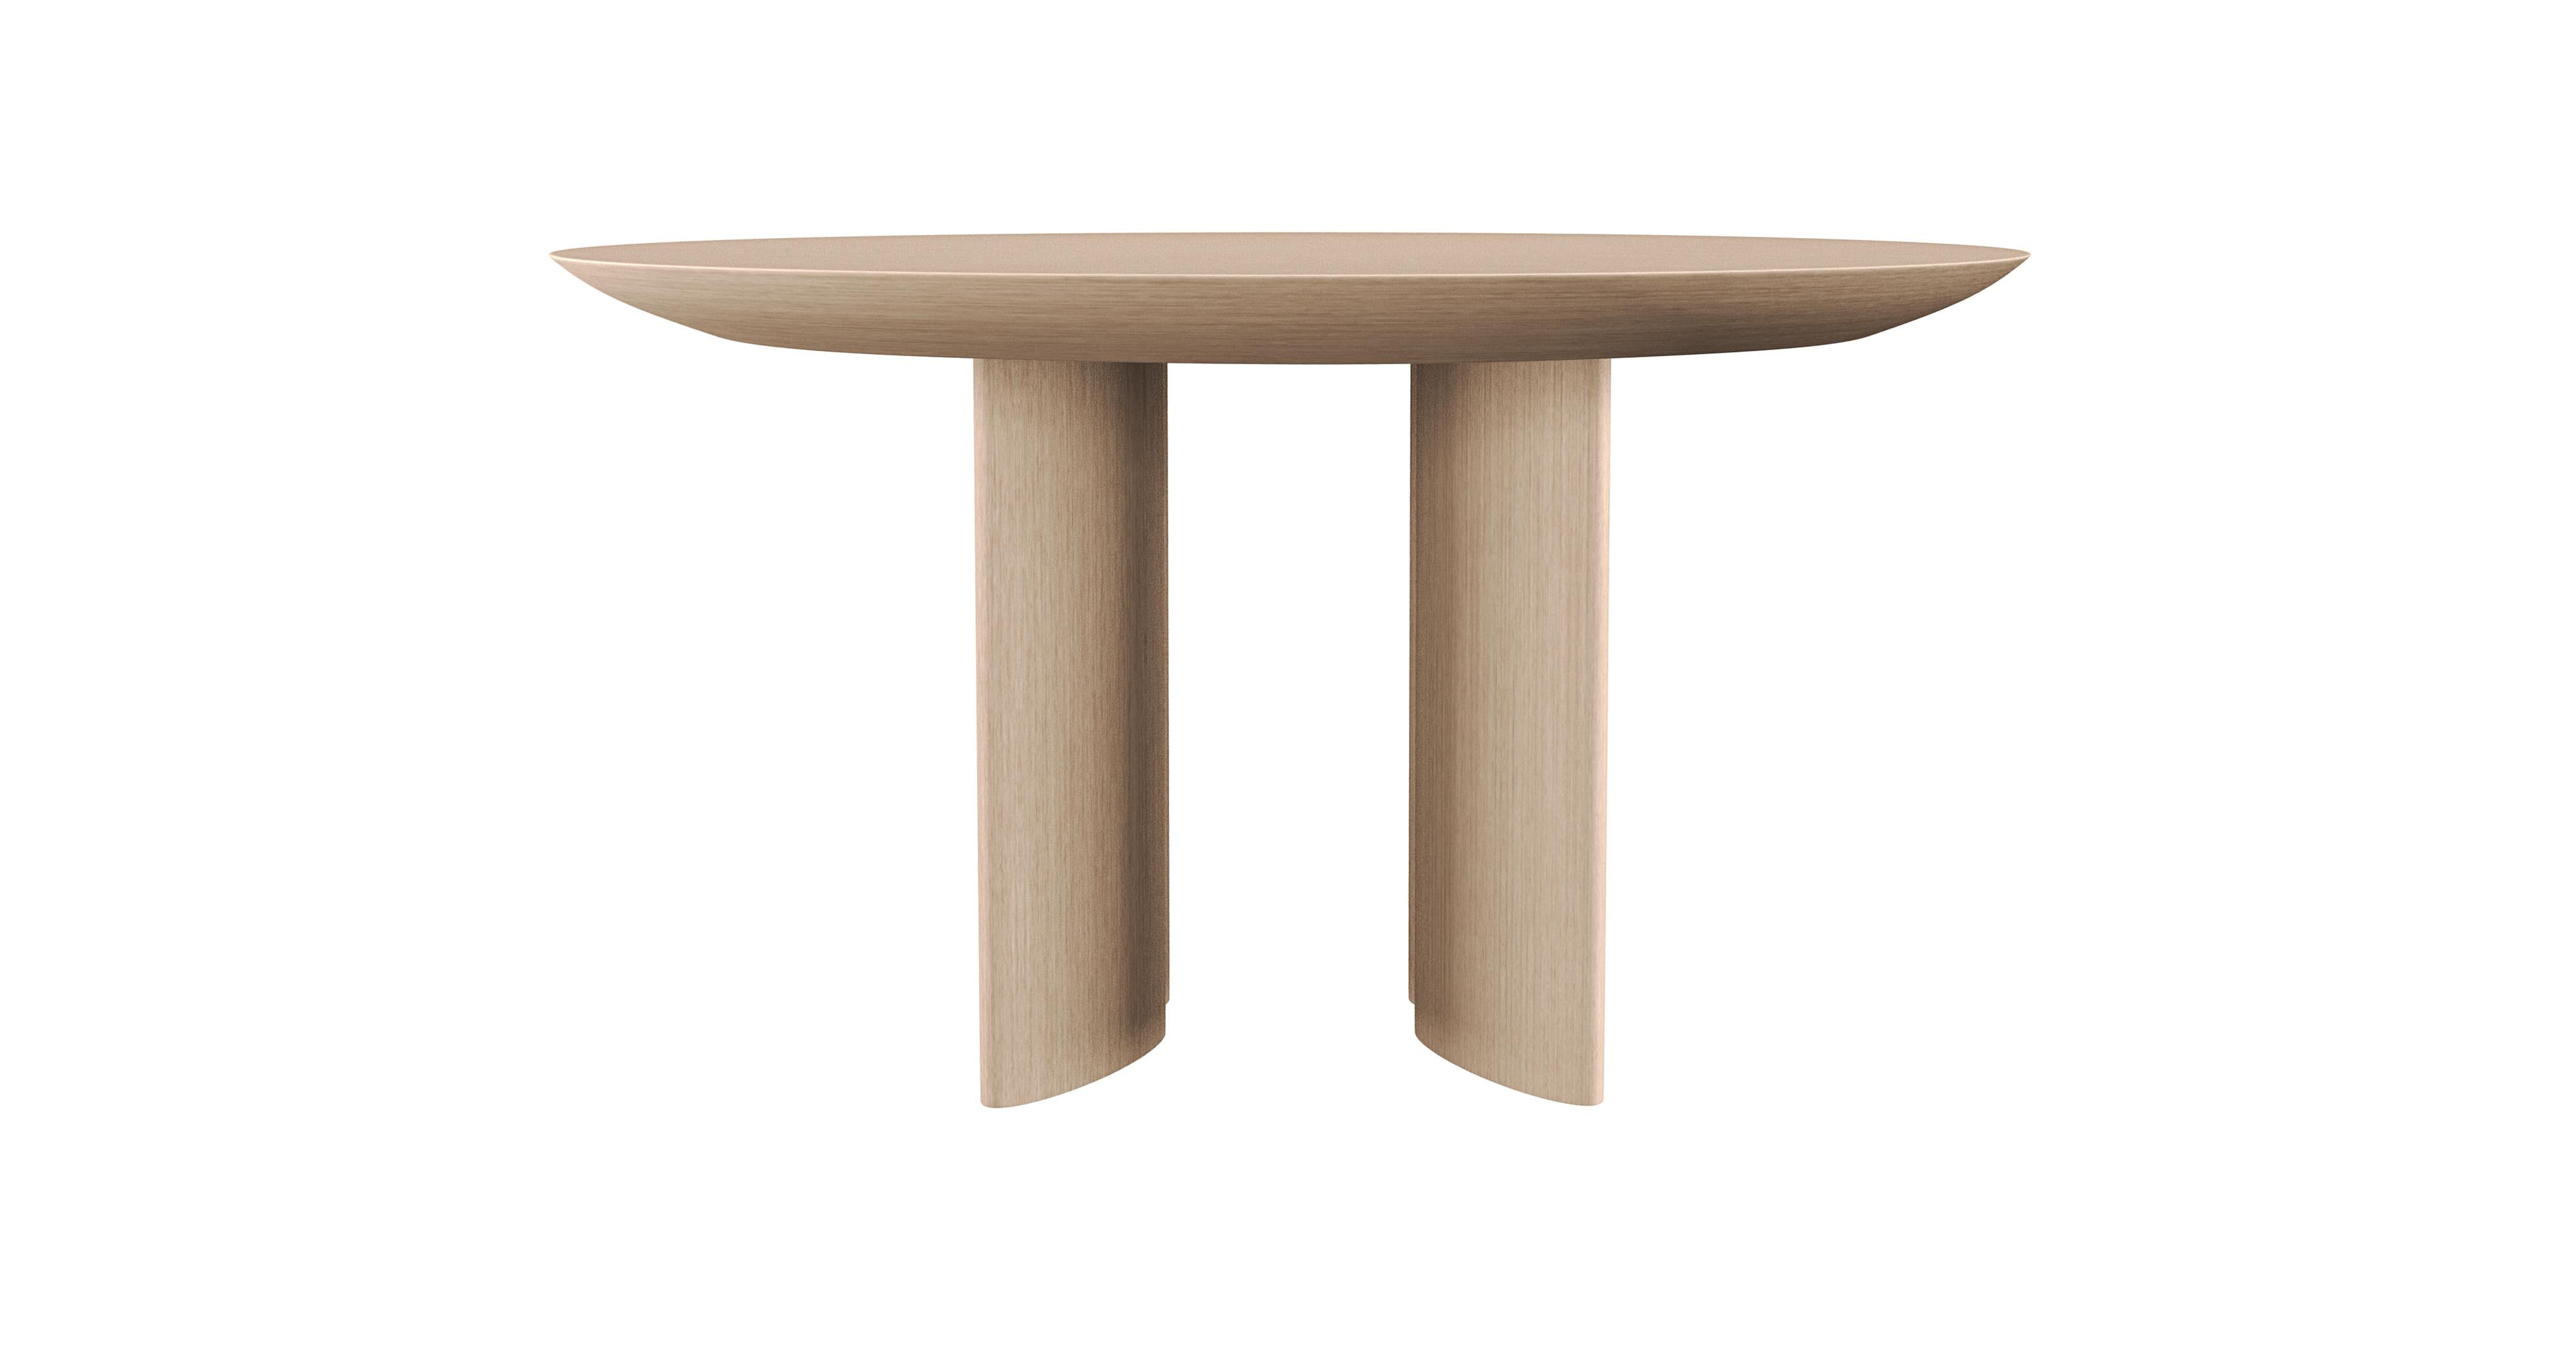 TORII

Inspirée par les portails sacrés japonais du même nom, Torii est une table en bois massif plaqué en chêne blanchi. Fabriqué à la main en Italie. 

Il représente une transition moderne entre le sacré et le profane : le caractère sacré de la